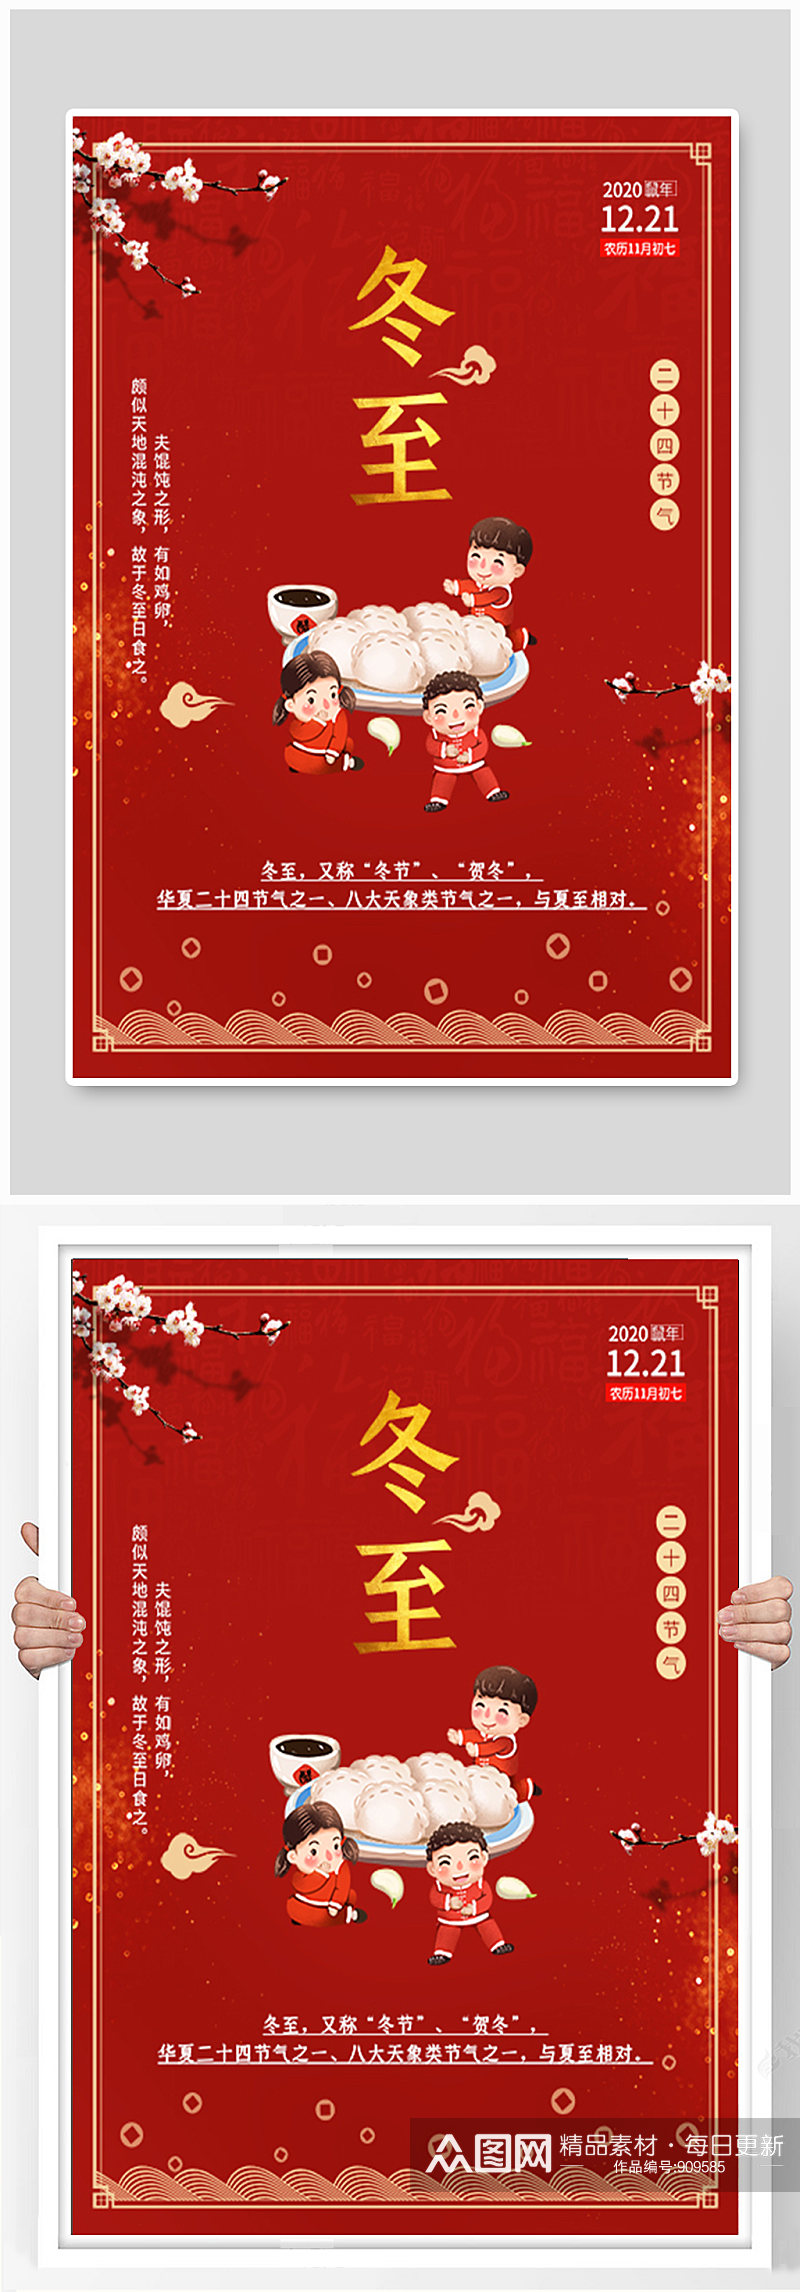 红色大气冬至节日饺子海报素材